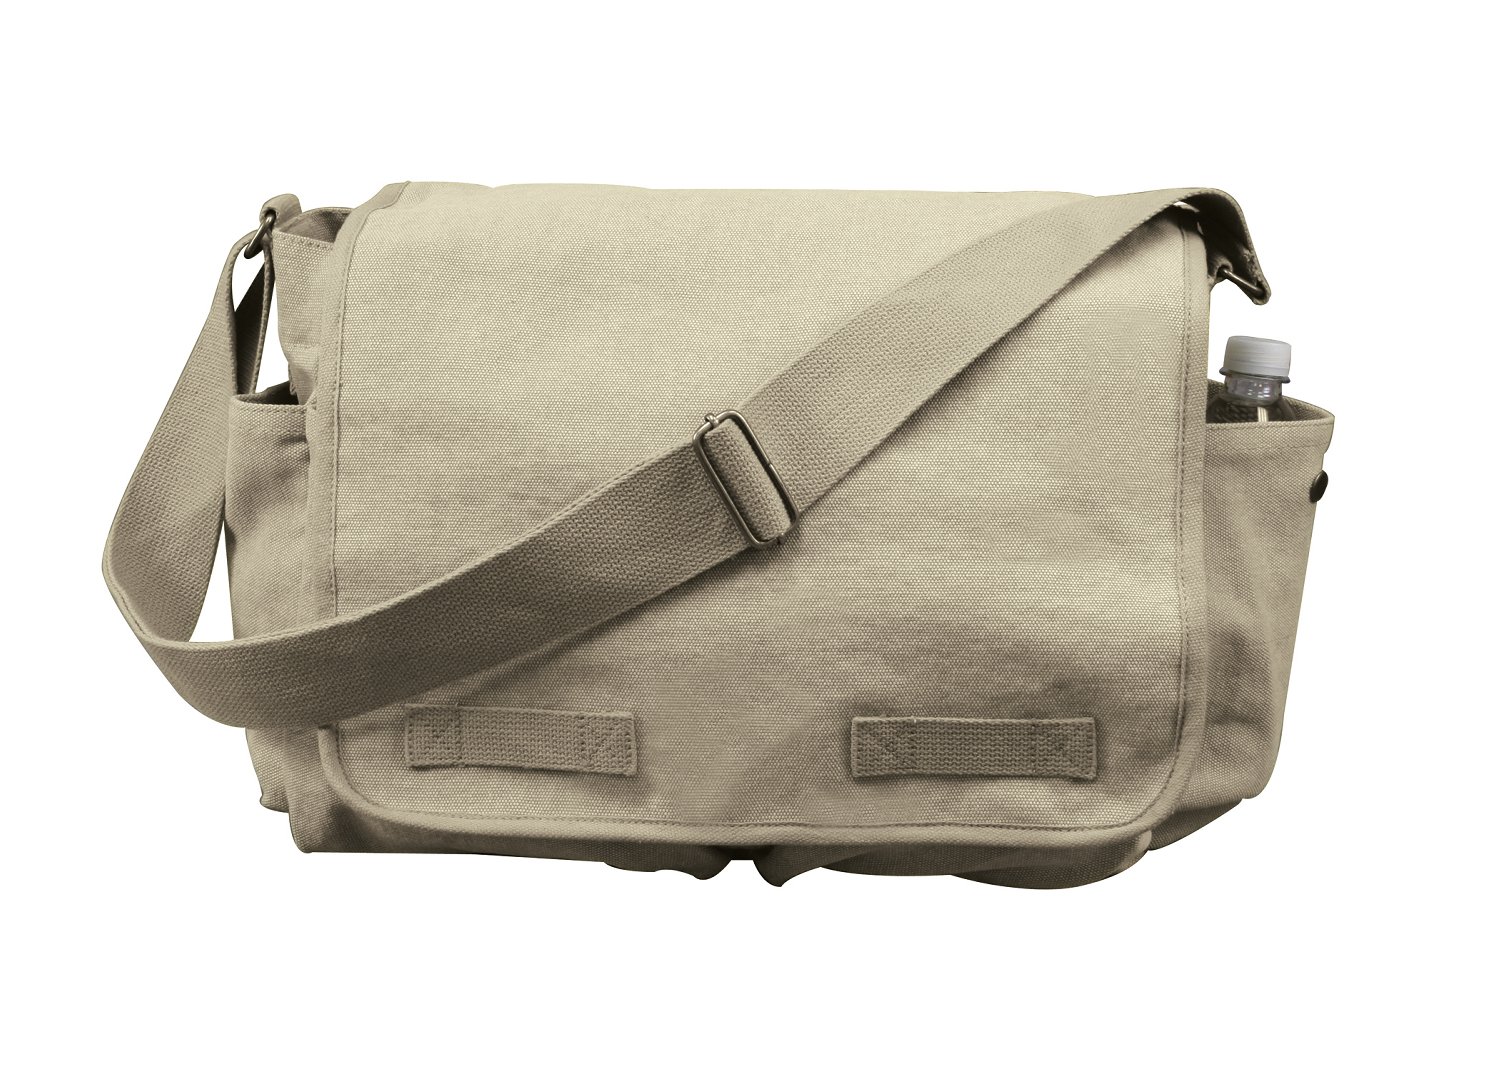 Rothco Classic Canvas Messenger Bag, Khaki - image 1 of 3